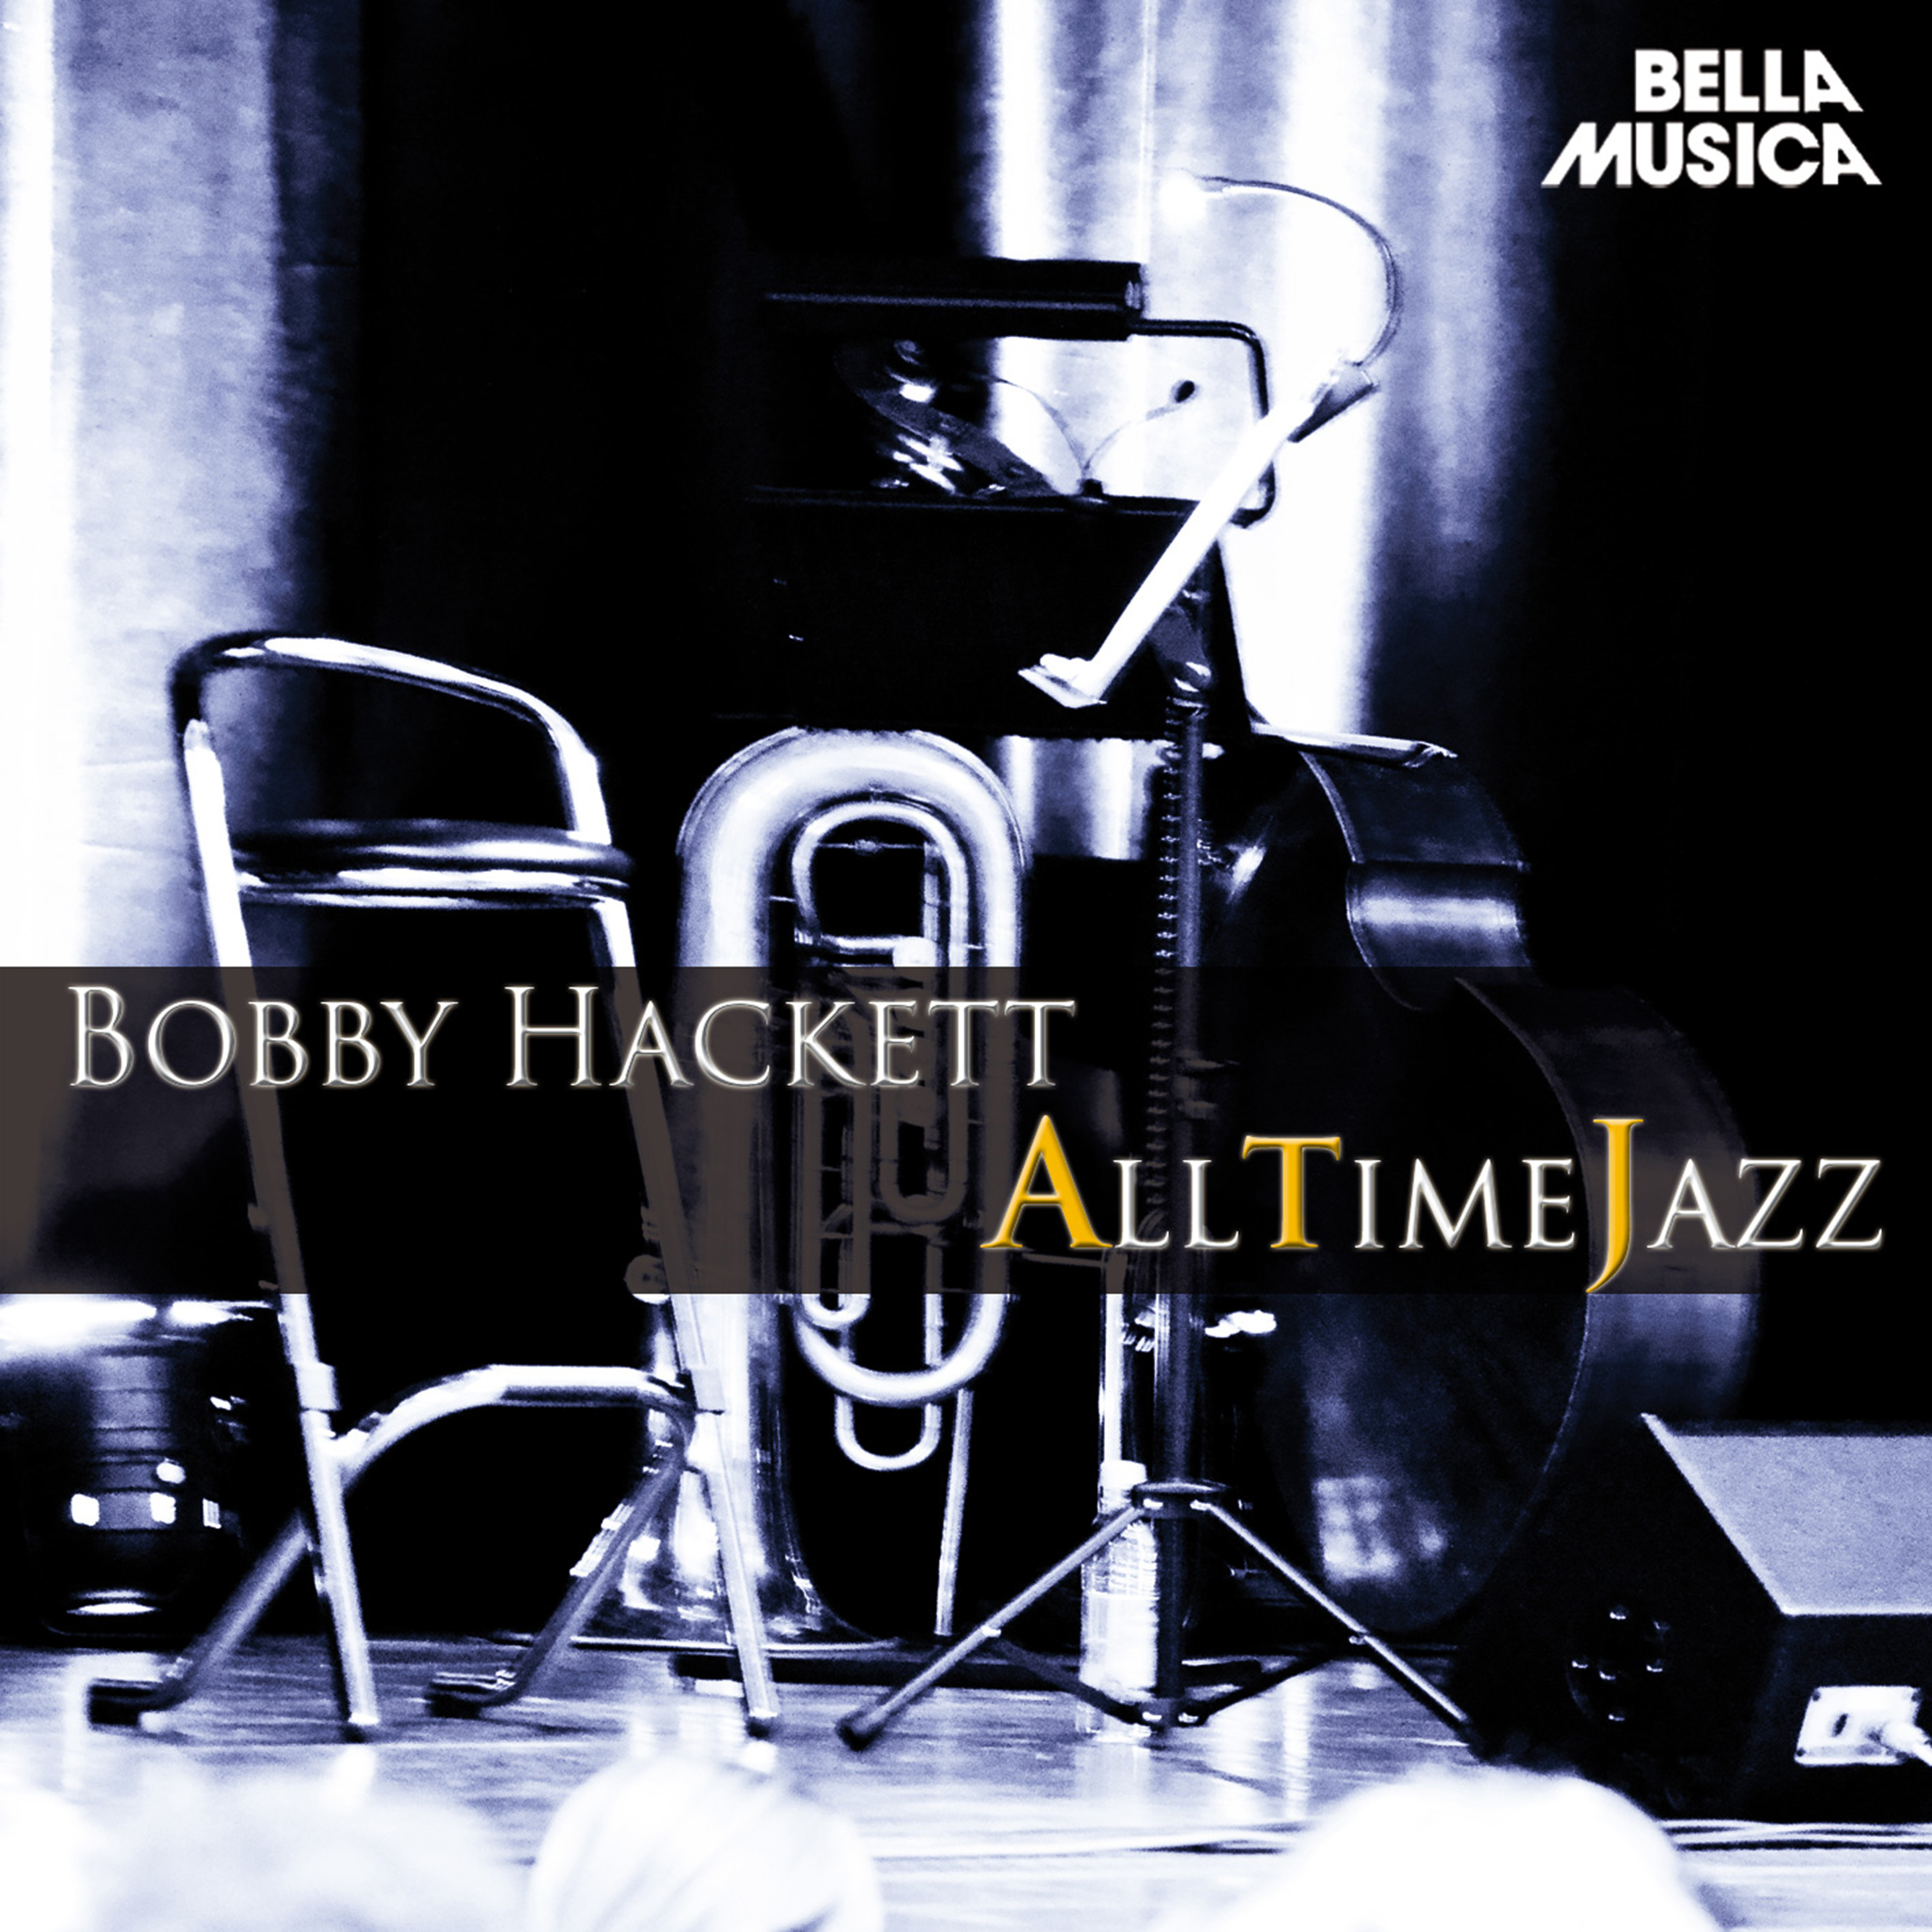 All Time Jazz: Bobby Hackett